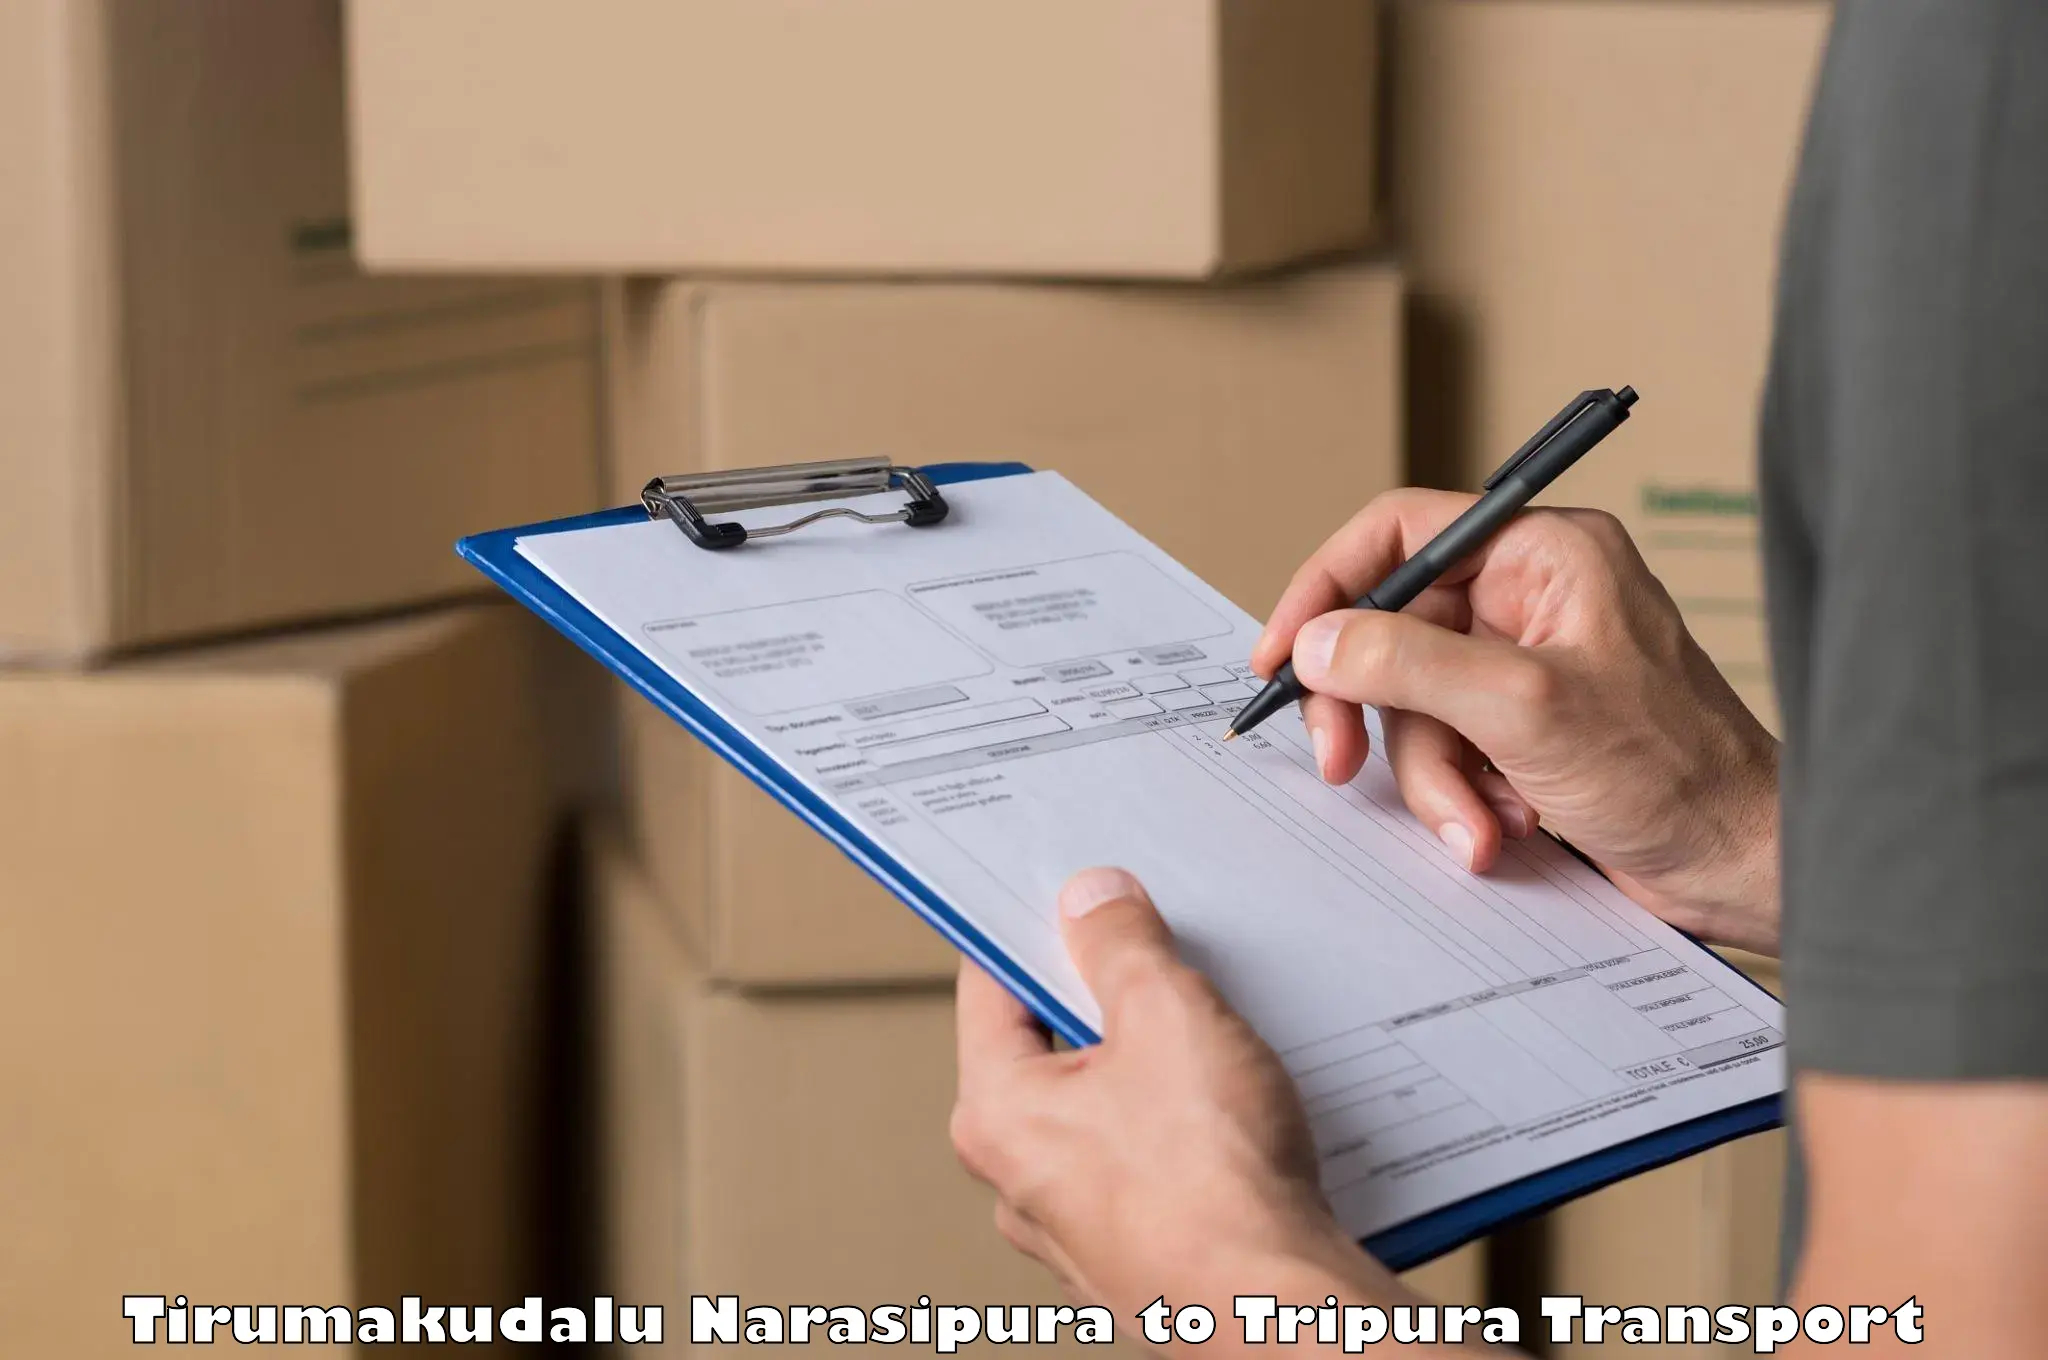 Container transport service Tirumakudalu Narasipura to Bishalgarh